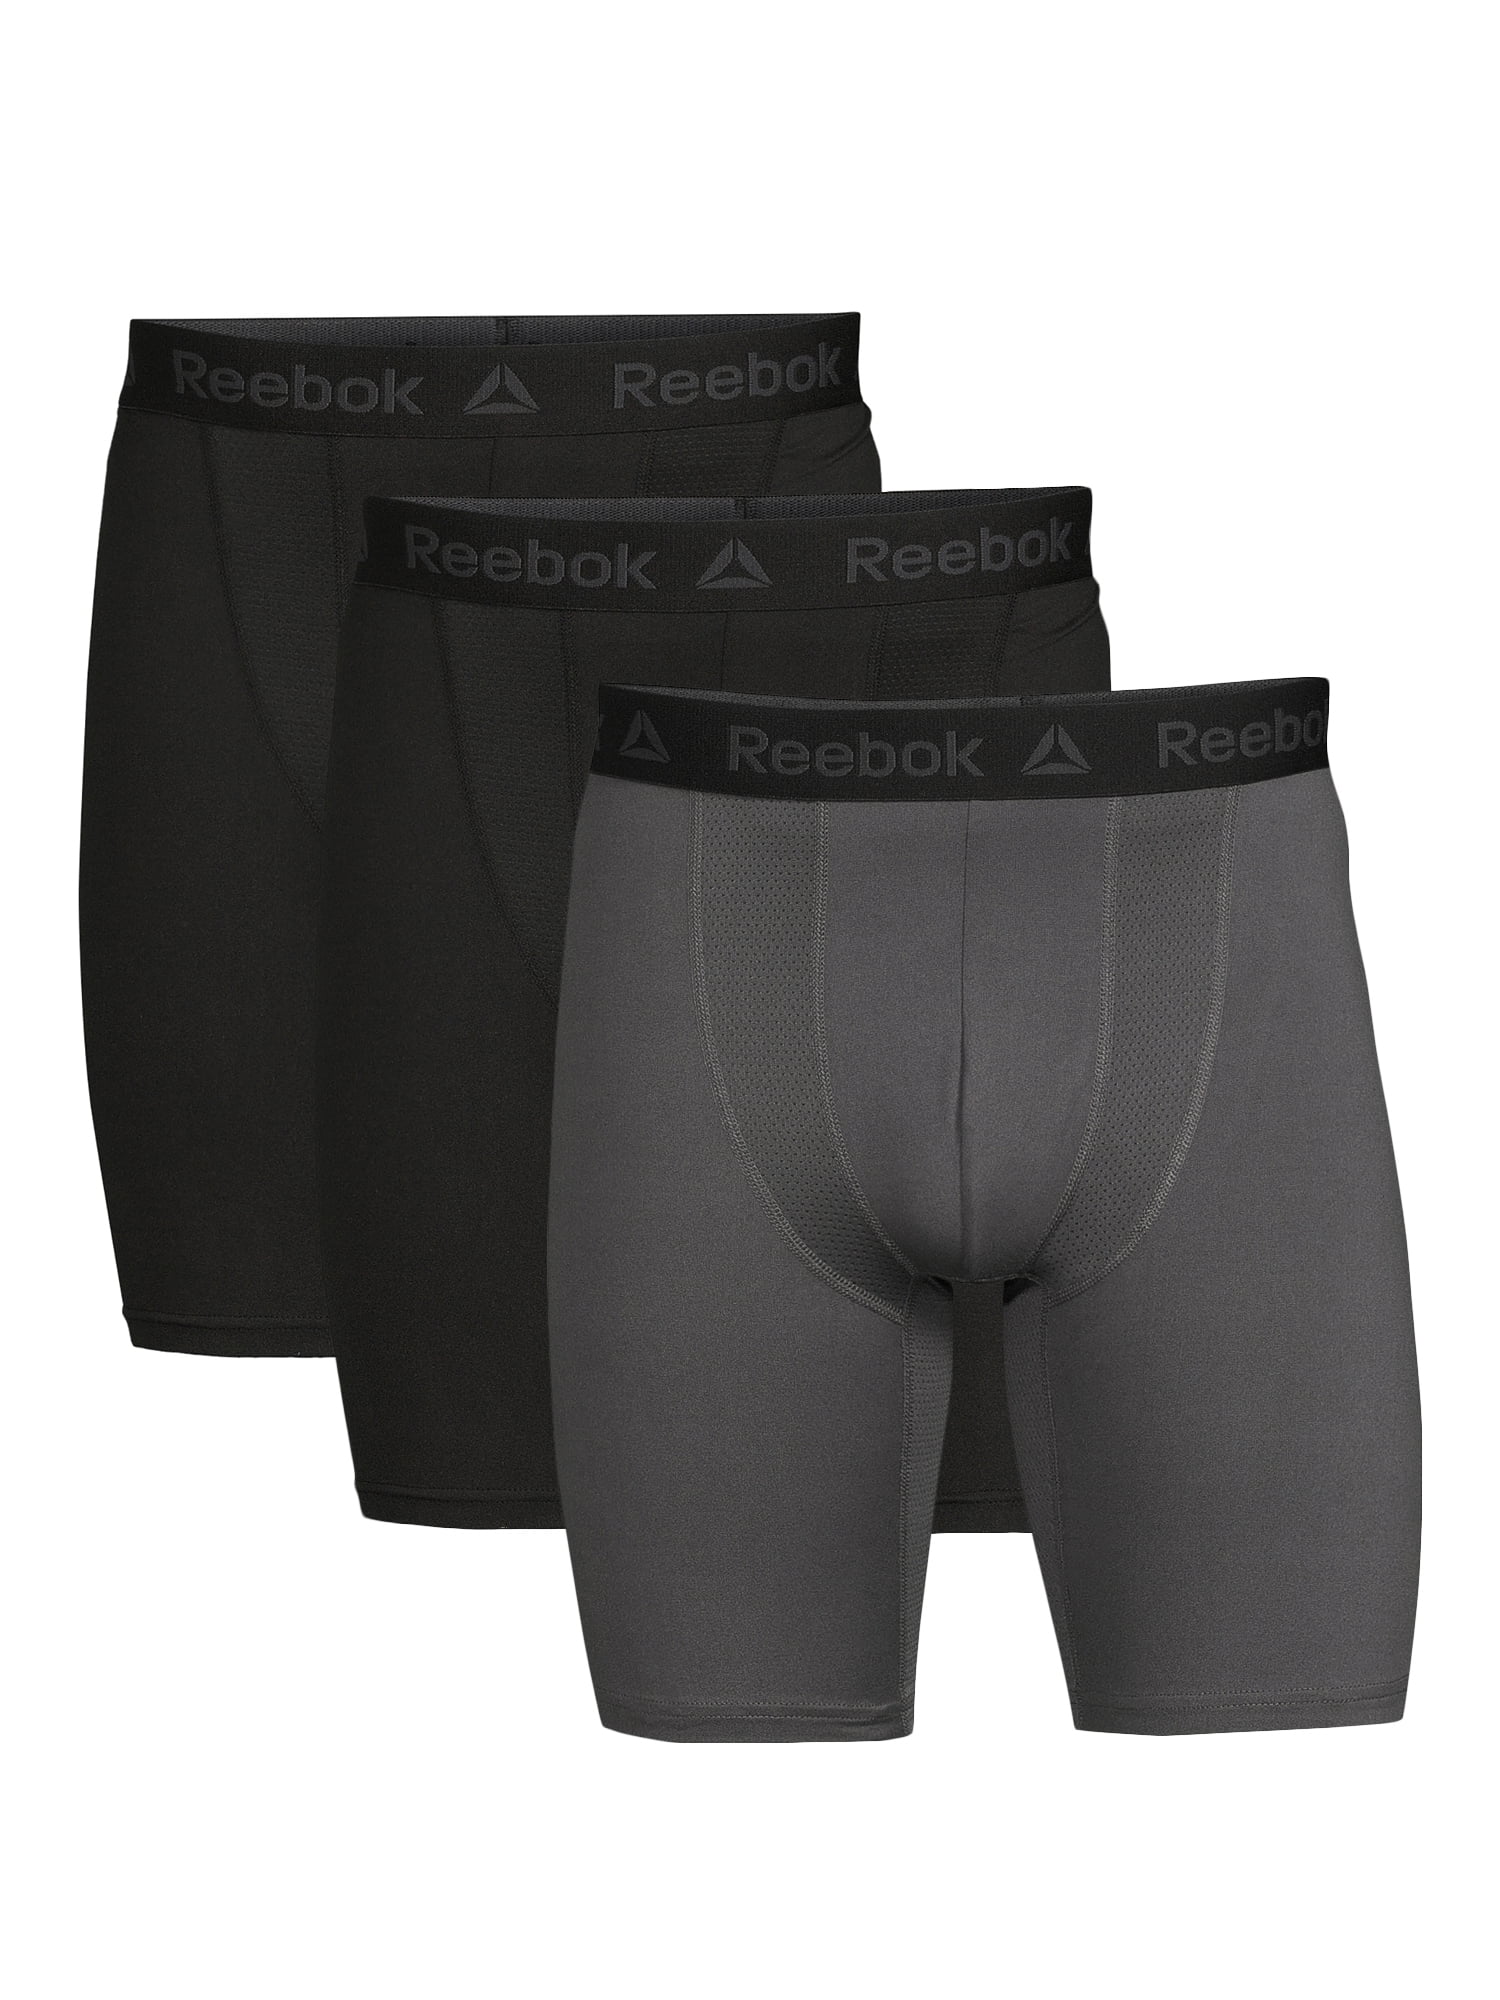 Reebok Women's Underwear – 8 Pack Long Leg Kuwait